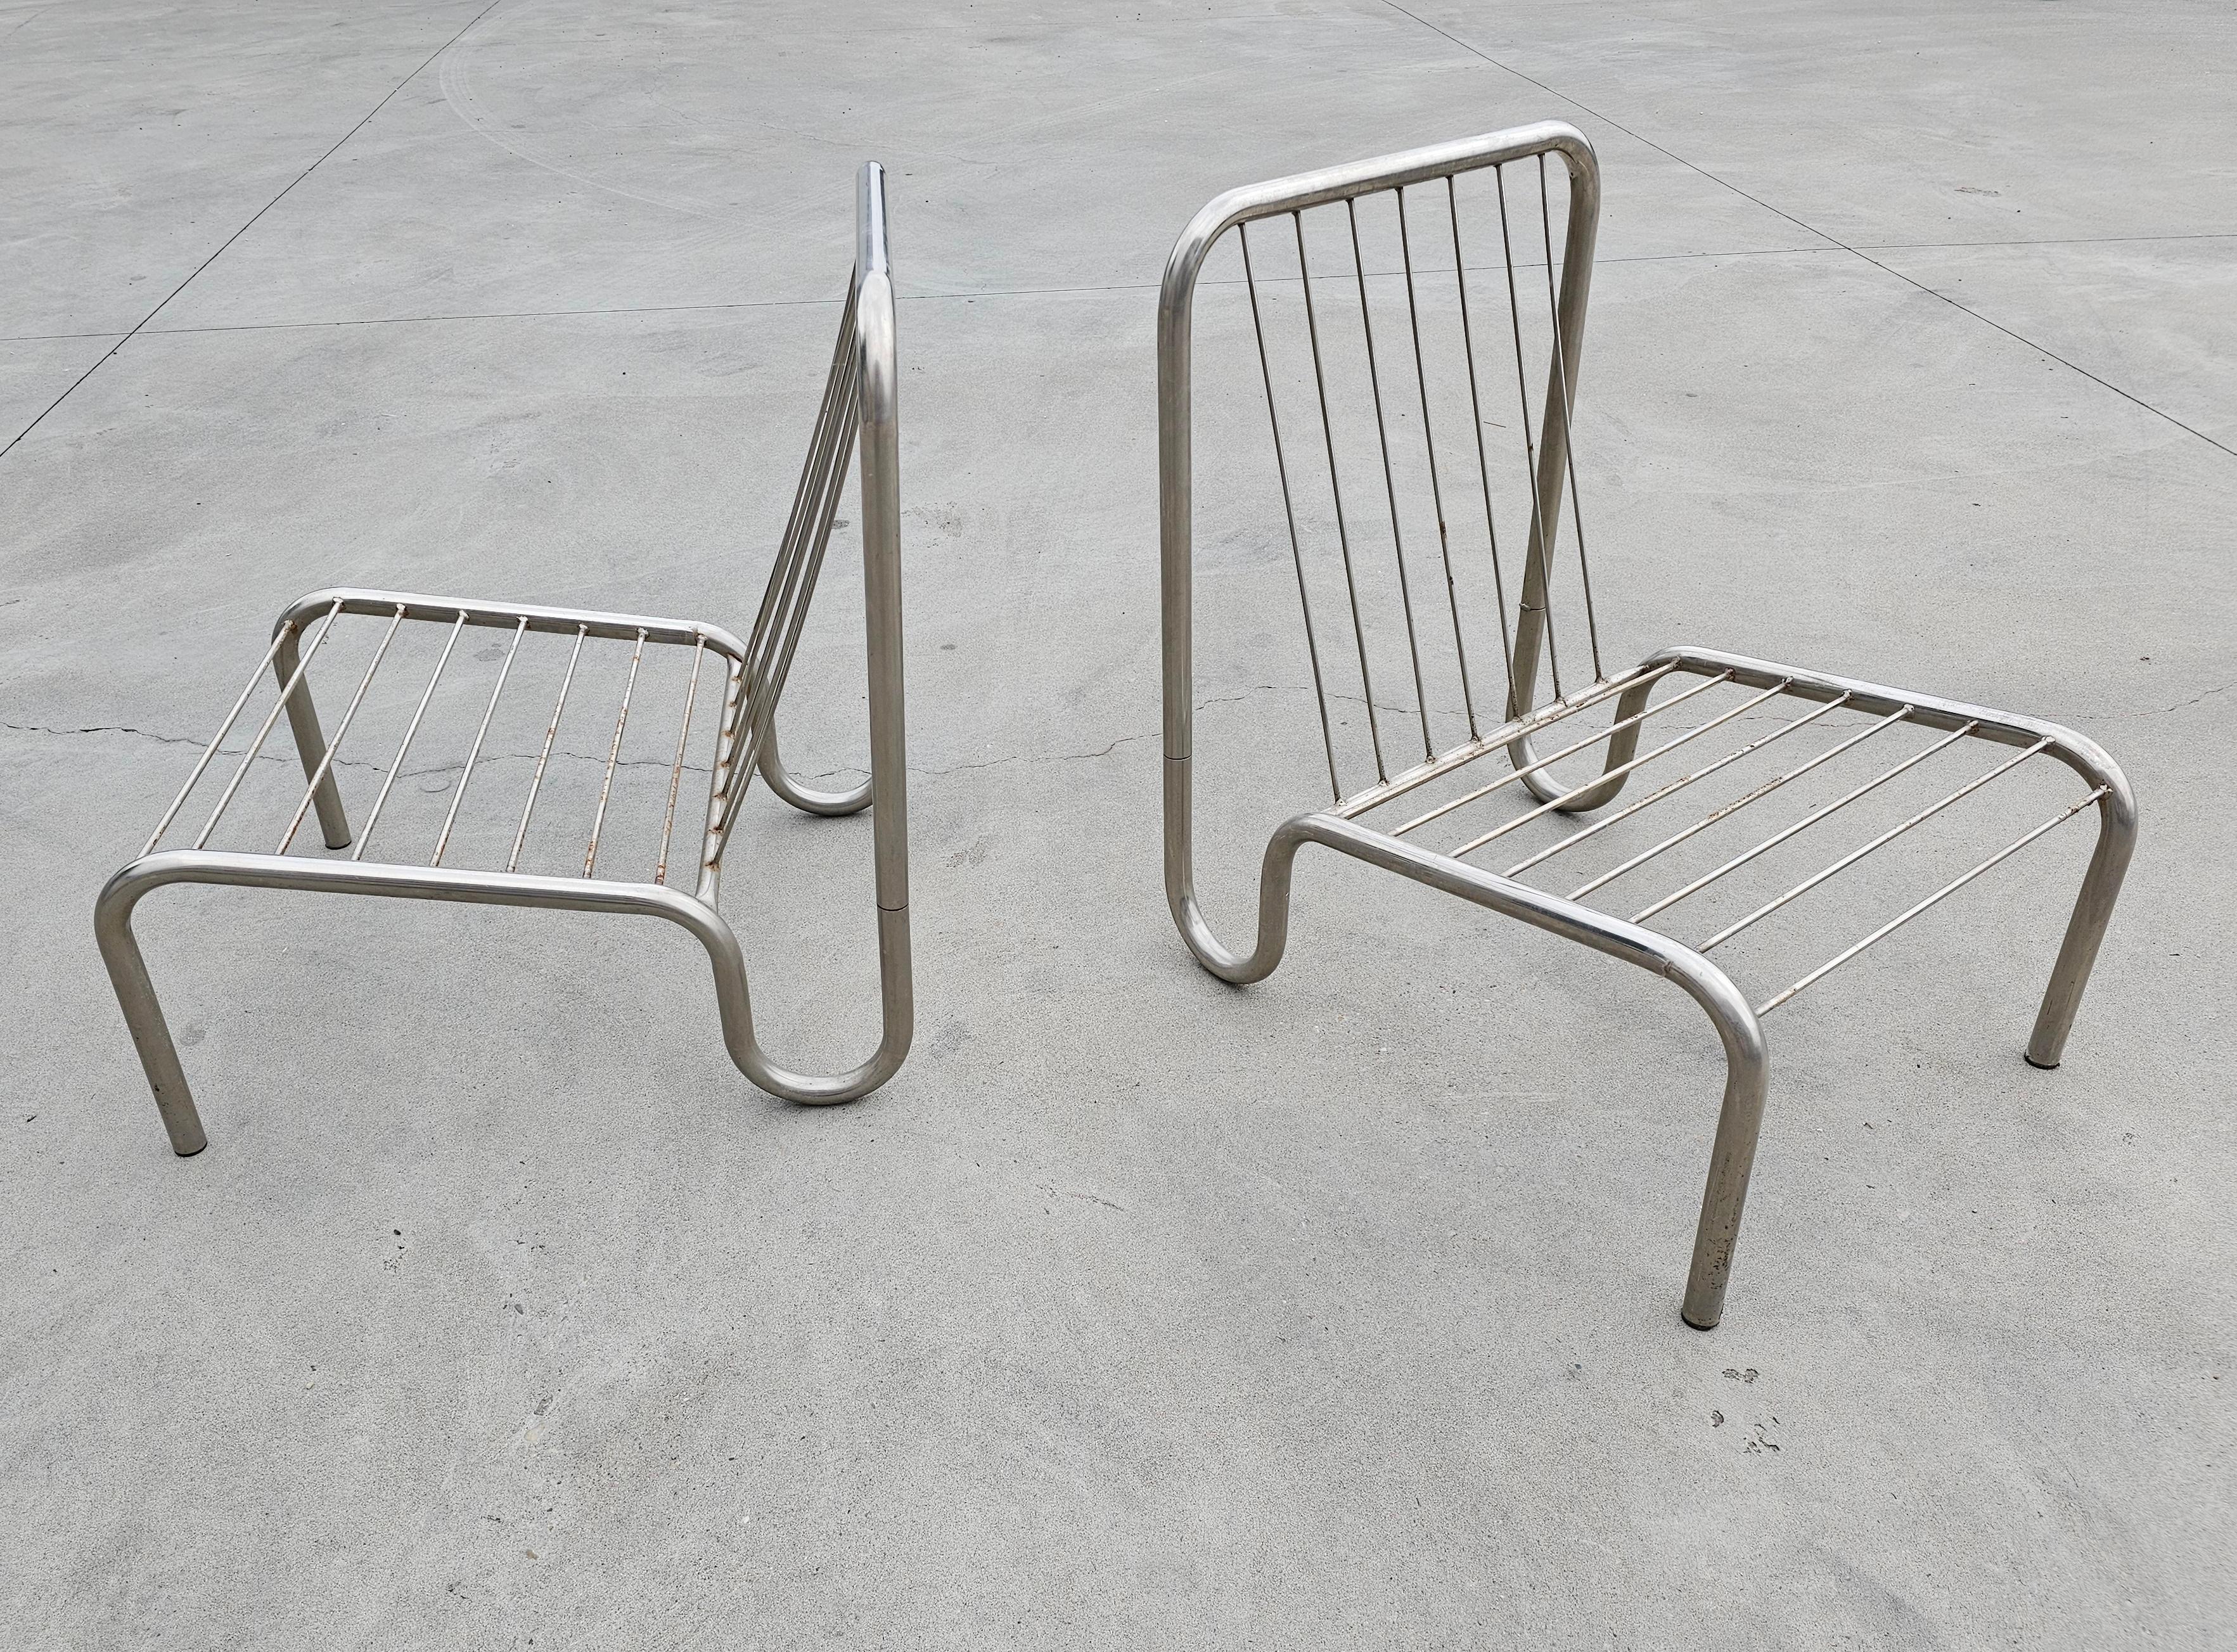 In dieser Auflistung finden Sie die Minimalist Tubular Bauhaus Lounge Chairs aus Edelstahl. Sie sind aus rostfreiem Stahl gefertigt und haben eine anatomische Form, die sie sehr bequem macht. Die Sessel werden ohne Kissen verkauft, so dass Sie